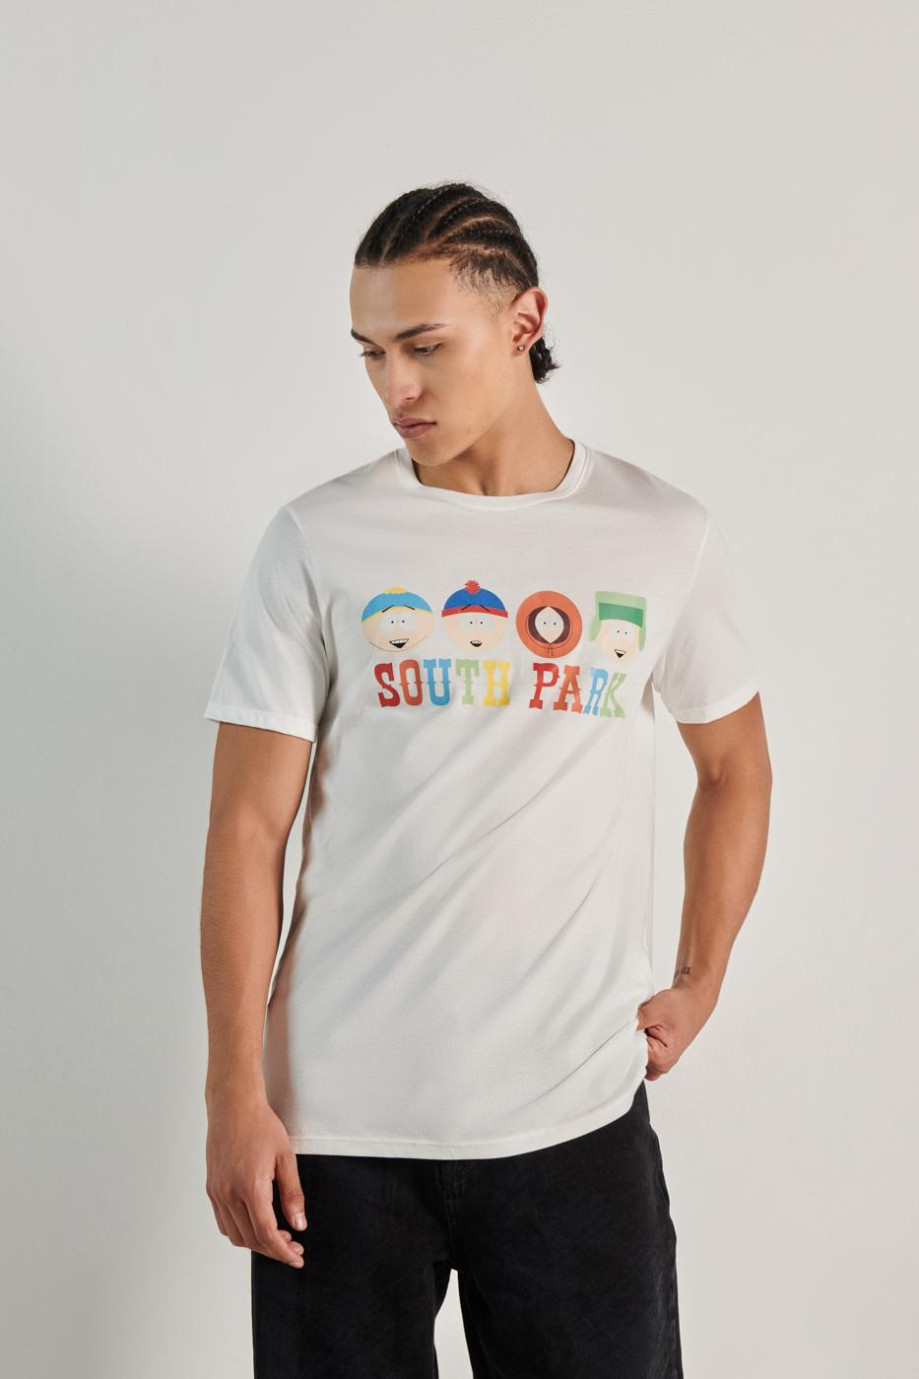 Camiseta unicolor con diseño de South Park y manga corta